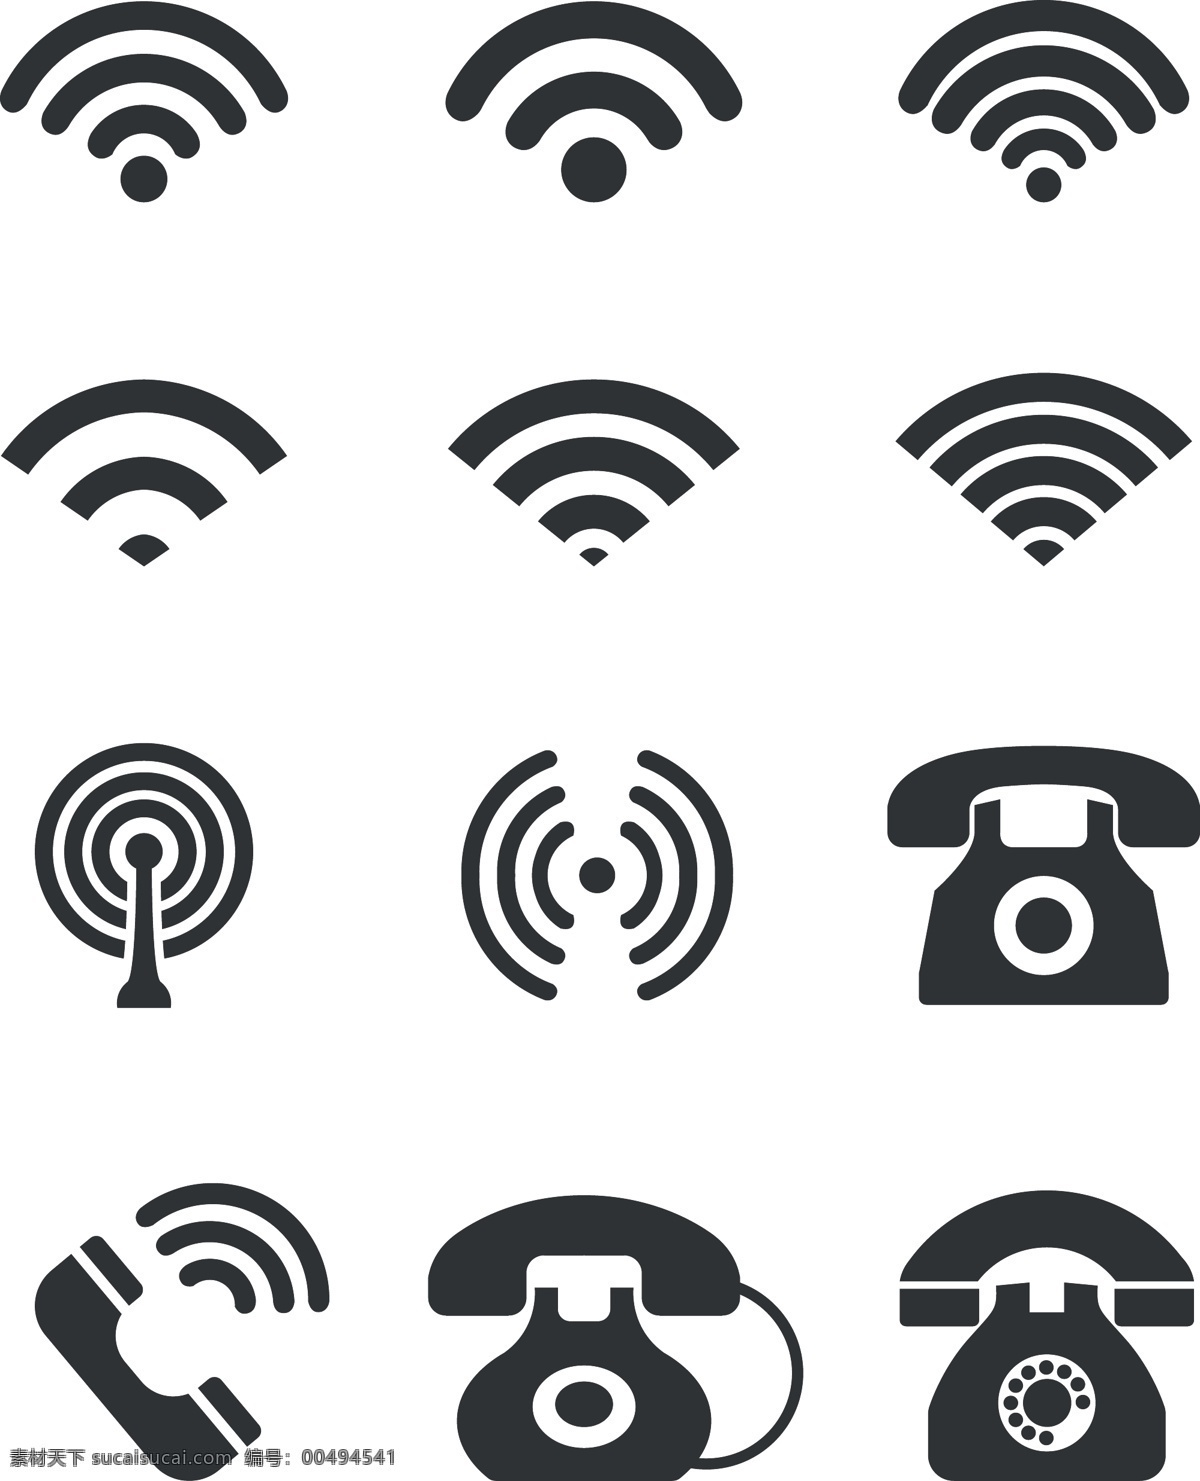 矢量 wifi 电话 图标 小图标 卡通手绘 logo设计